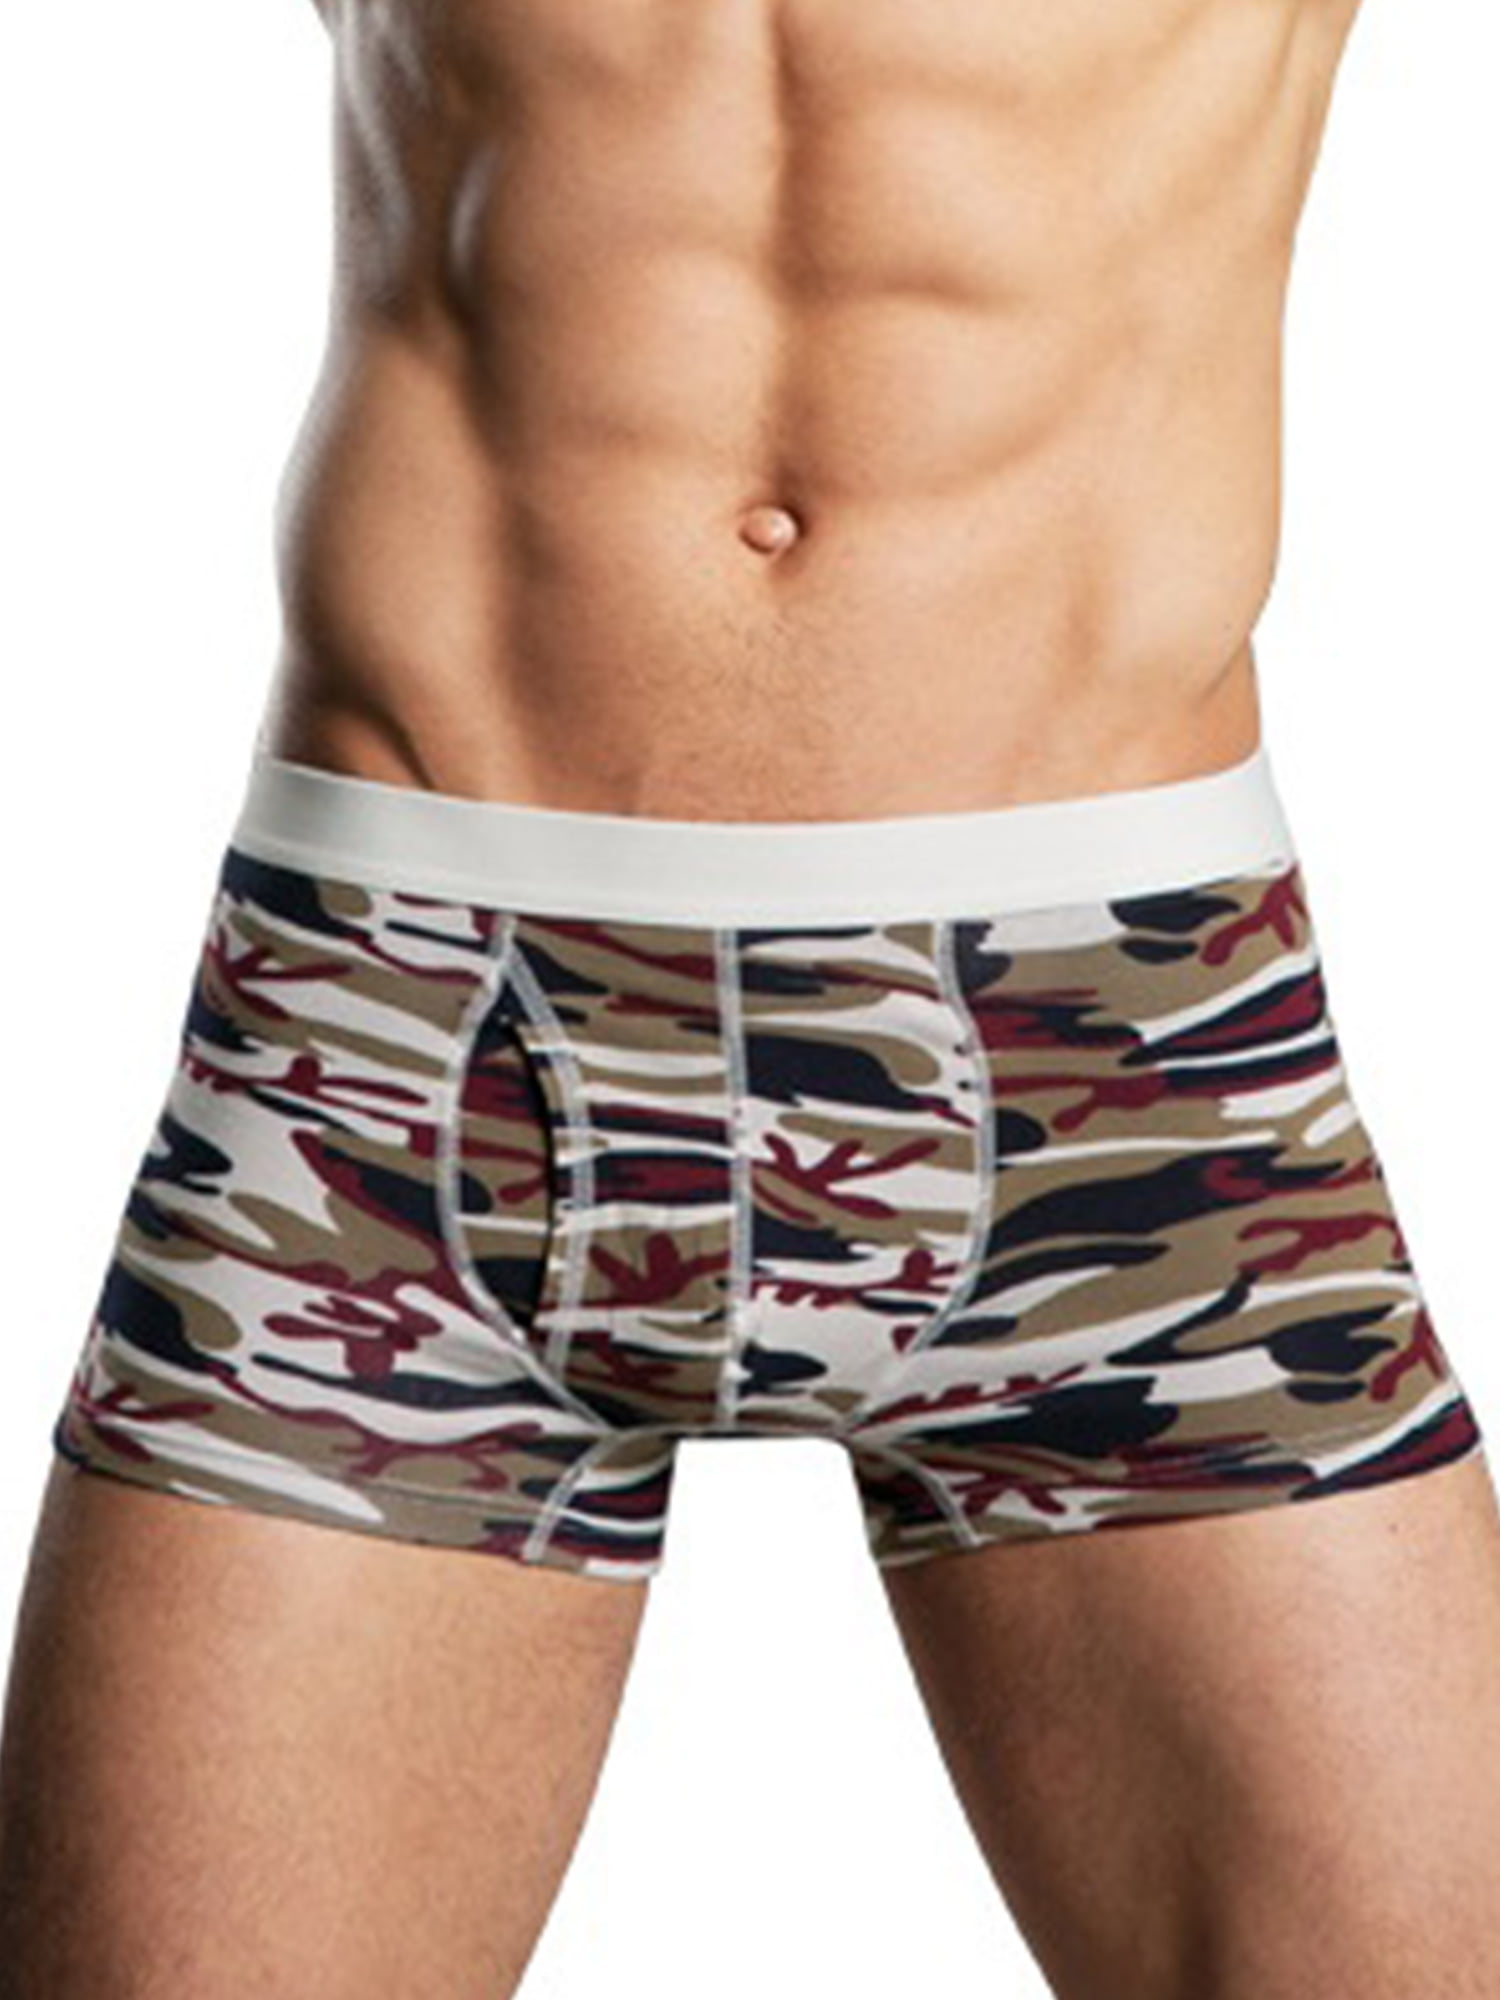 Mens Camouflage Underwear Boxer Briefs Underpants Trunk Shorts Undies M-2XL MA